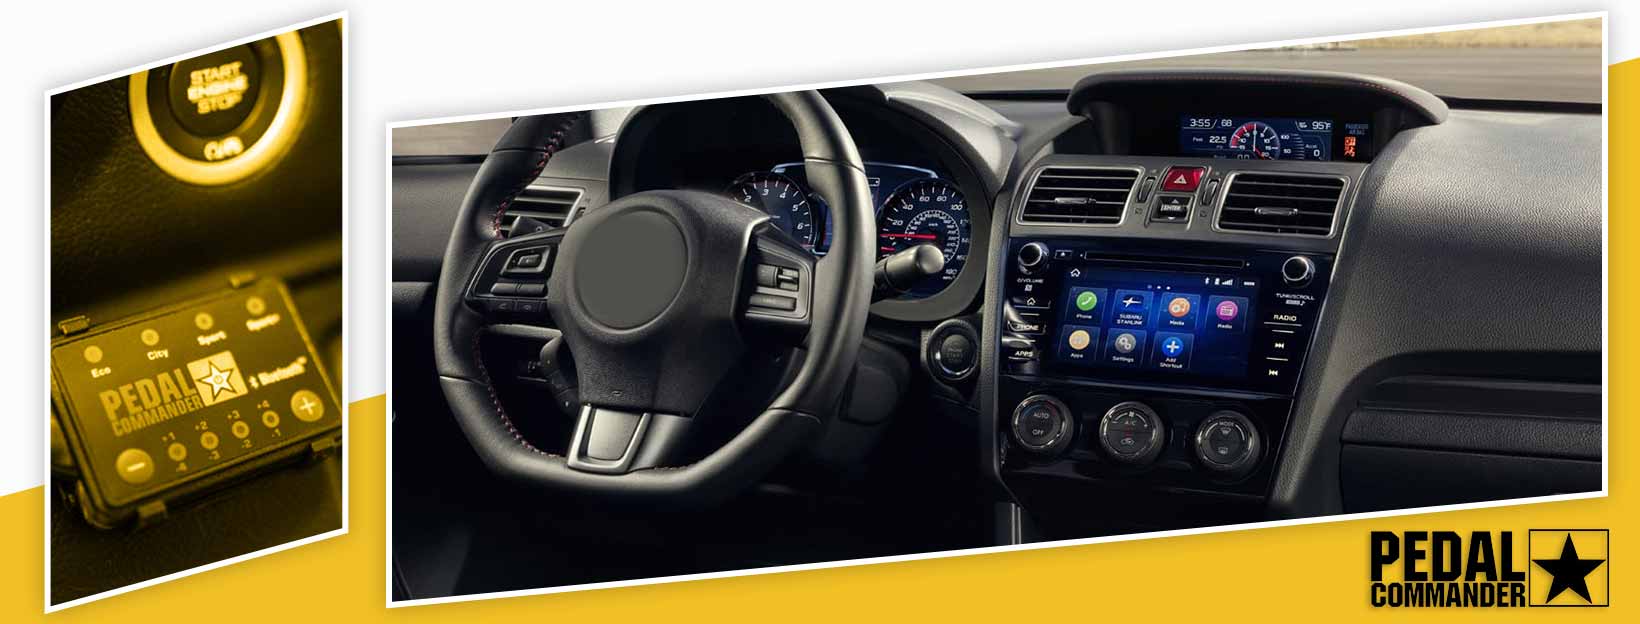 Pedal Commander for Subaru WRX - interior